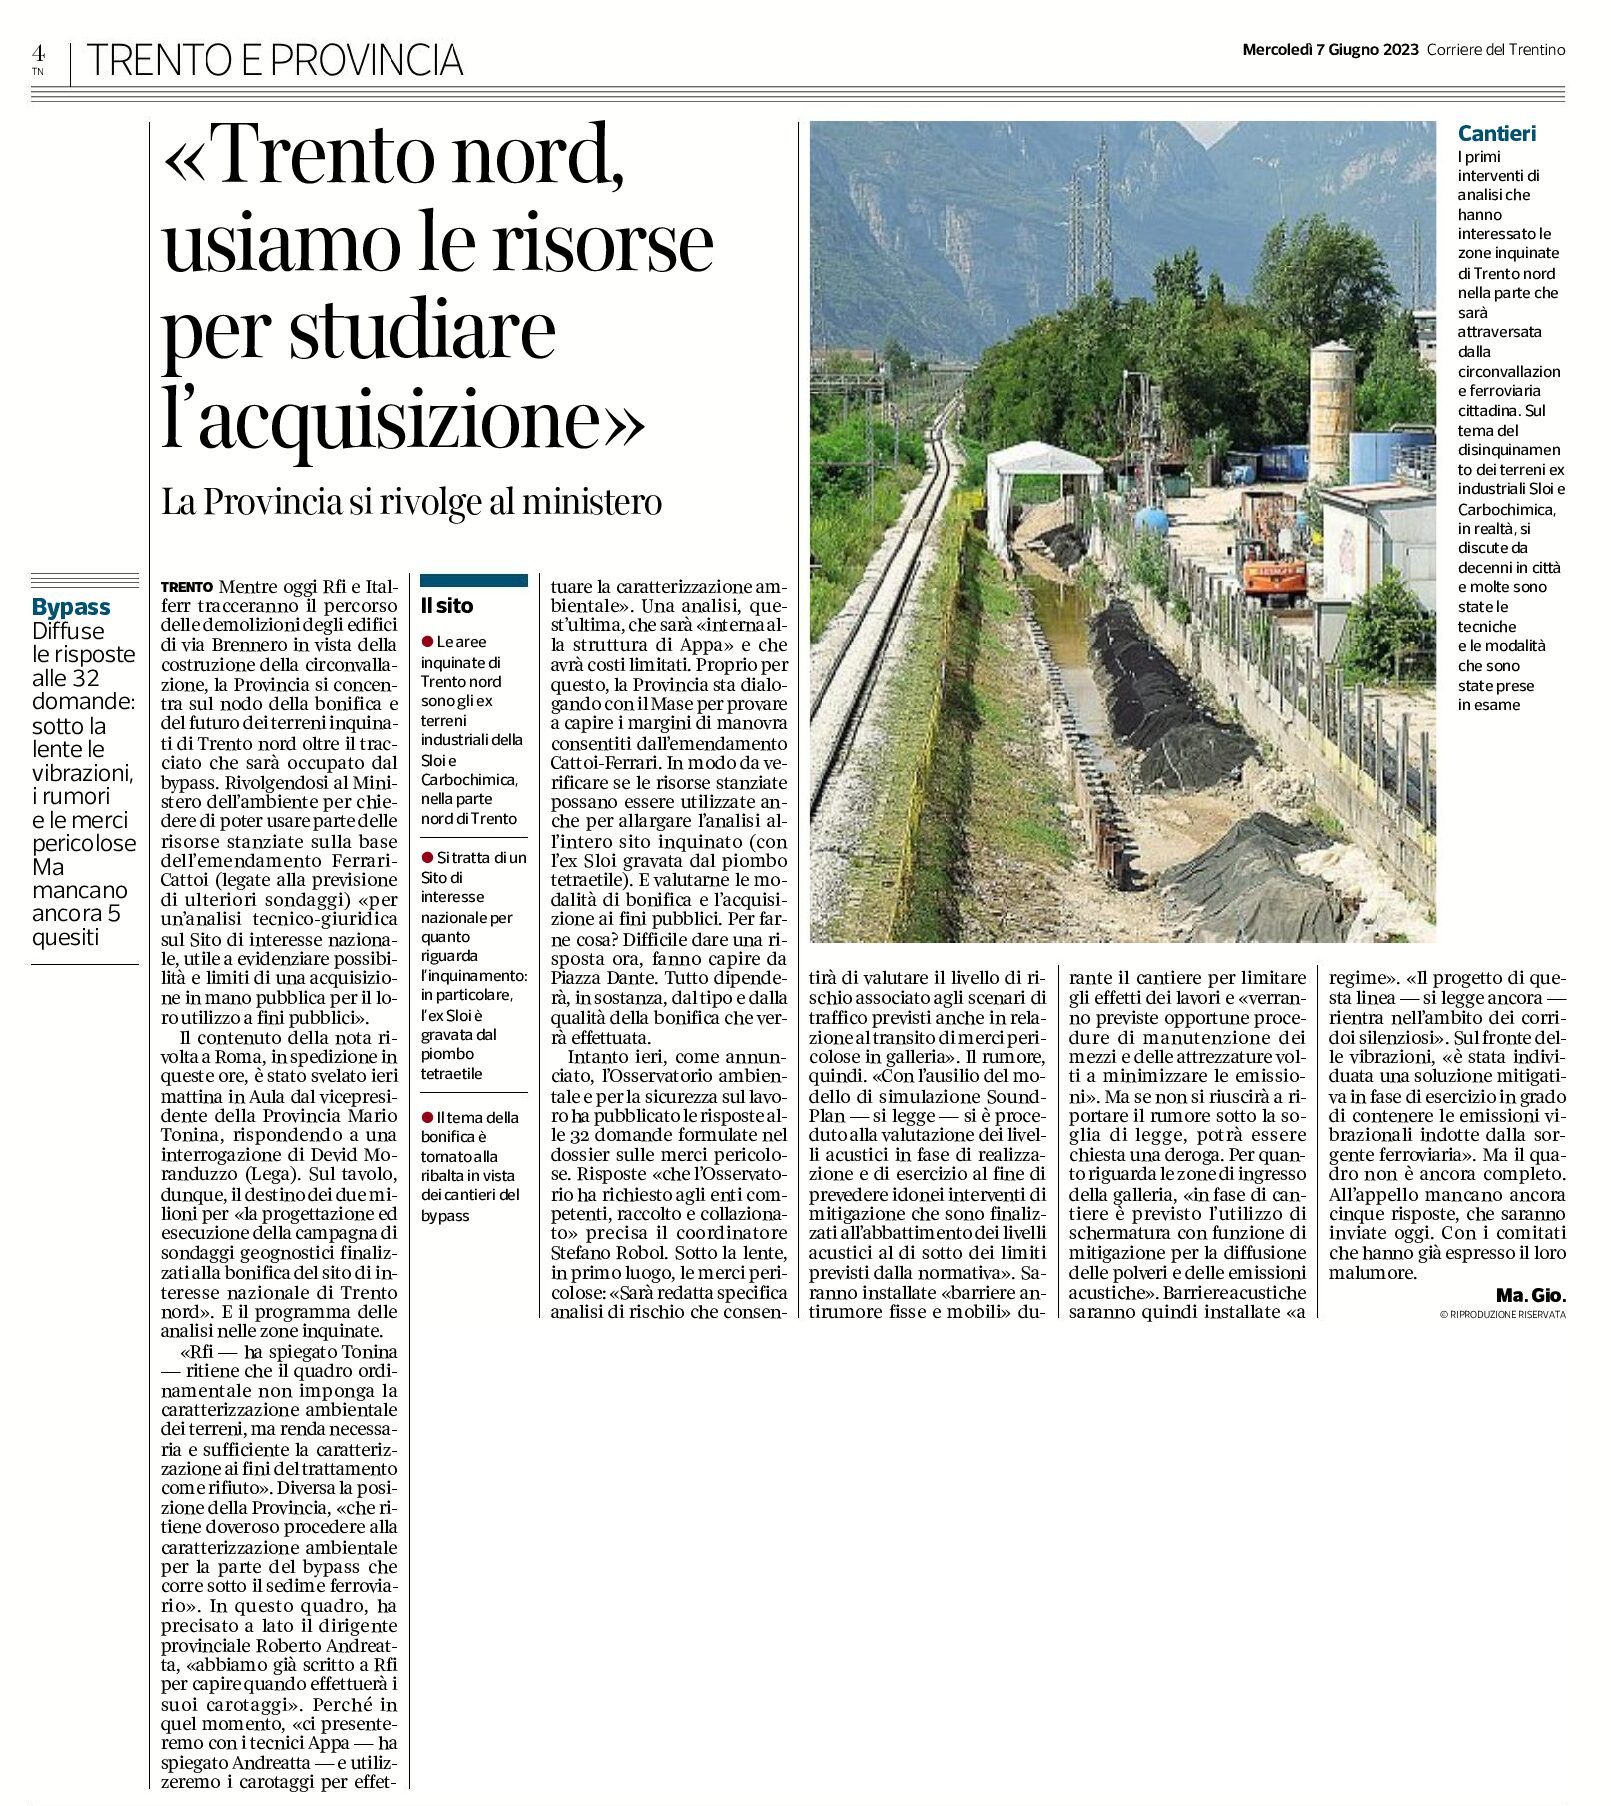 Trento Nord, bypass: la Provincia si rivolge al ministero